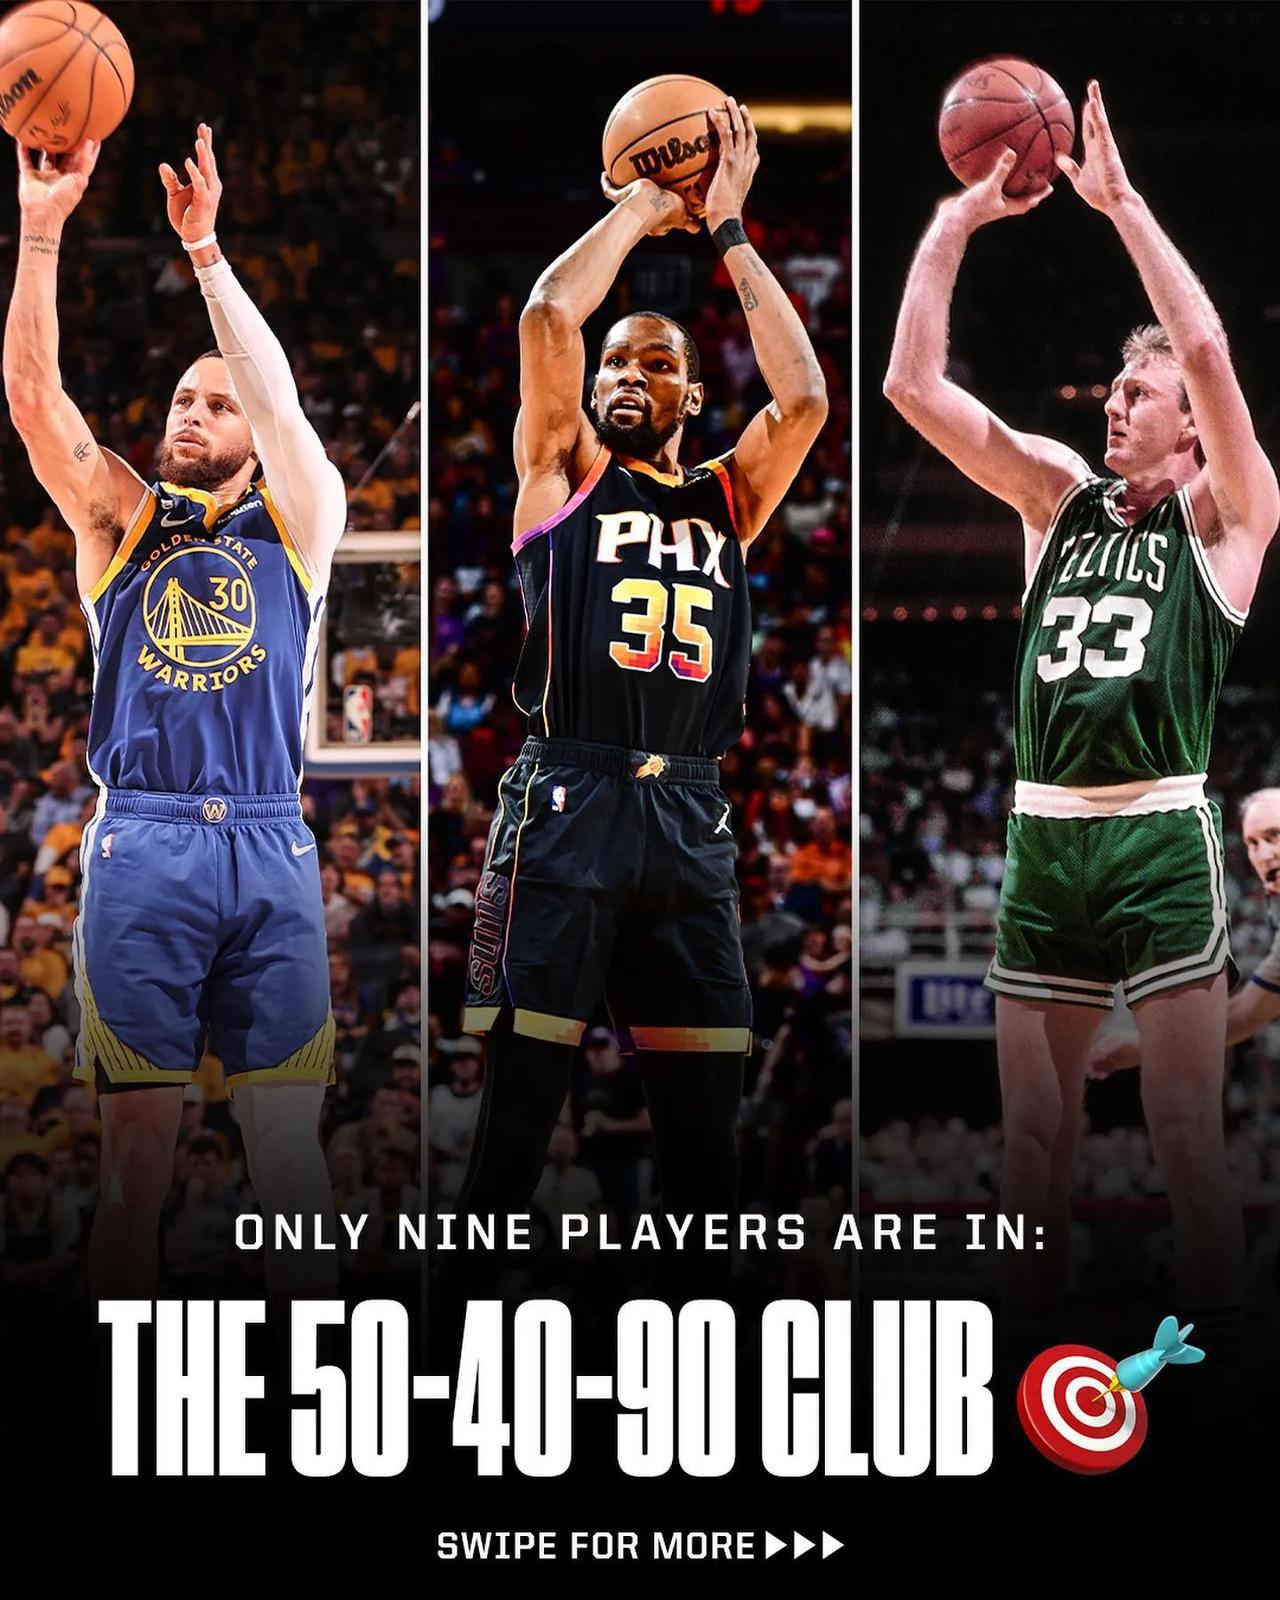 美媒列出了NBA历史上进入过180俱乐部的9名球员
现役斯蒂芬库里、凯里欧文和凯